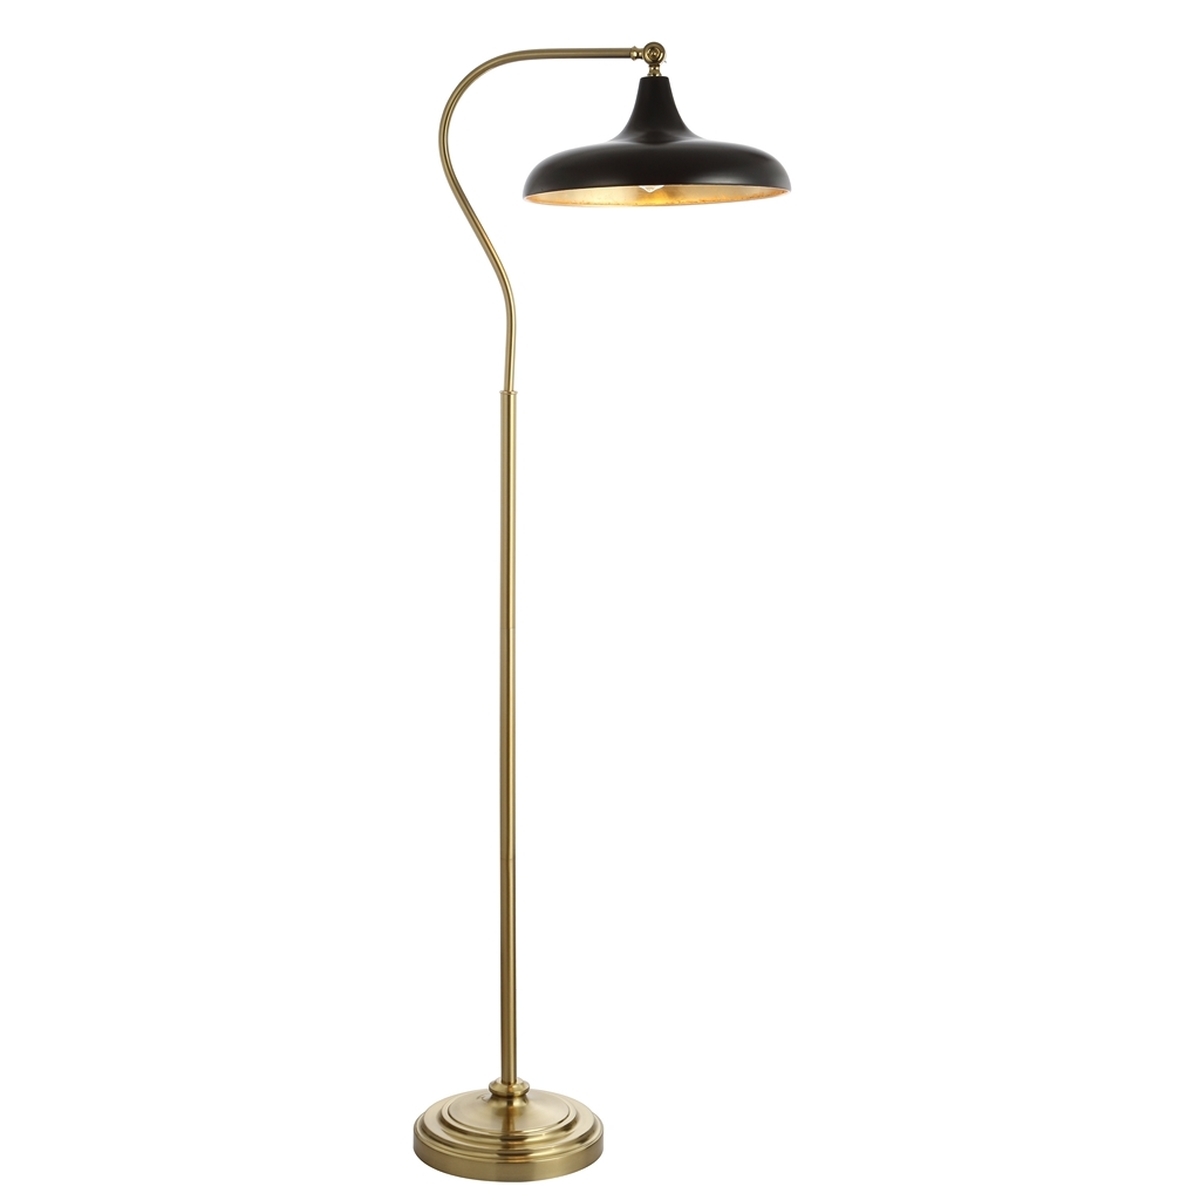 STEFAN FLOOR LAMP Design: FLL4046A - Image 0